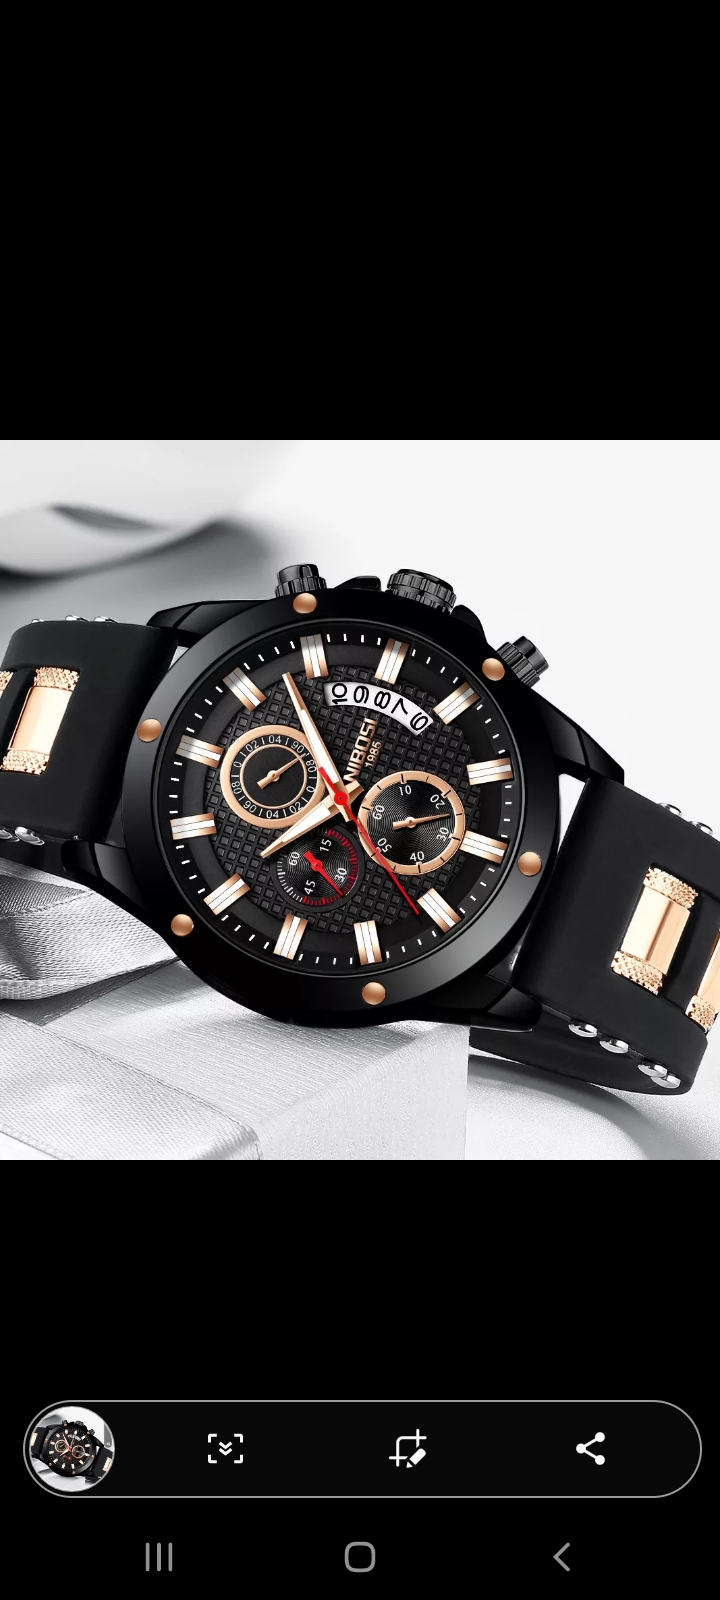 Montre de luxe La montre ci-dessous est la Nibosi noir en acier et silicone inoxydable et résistante à l